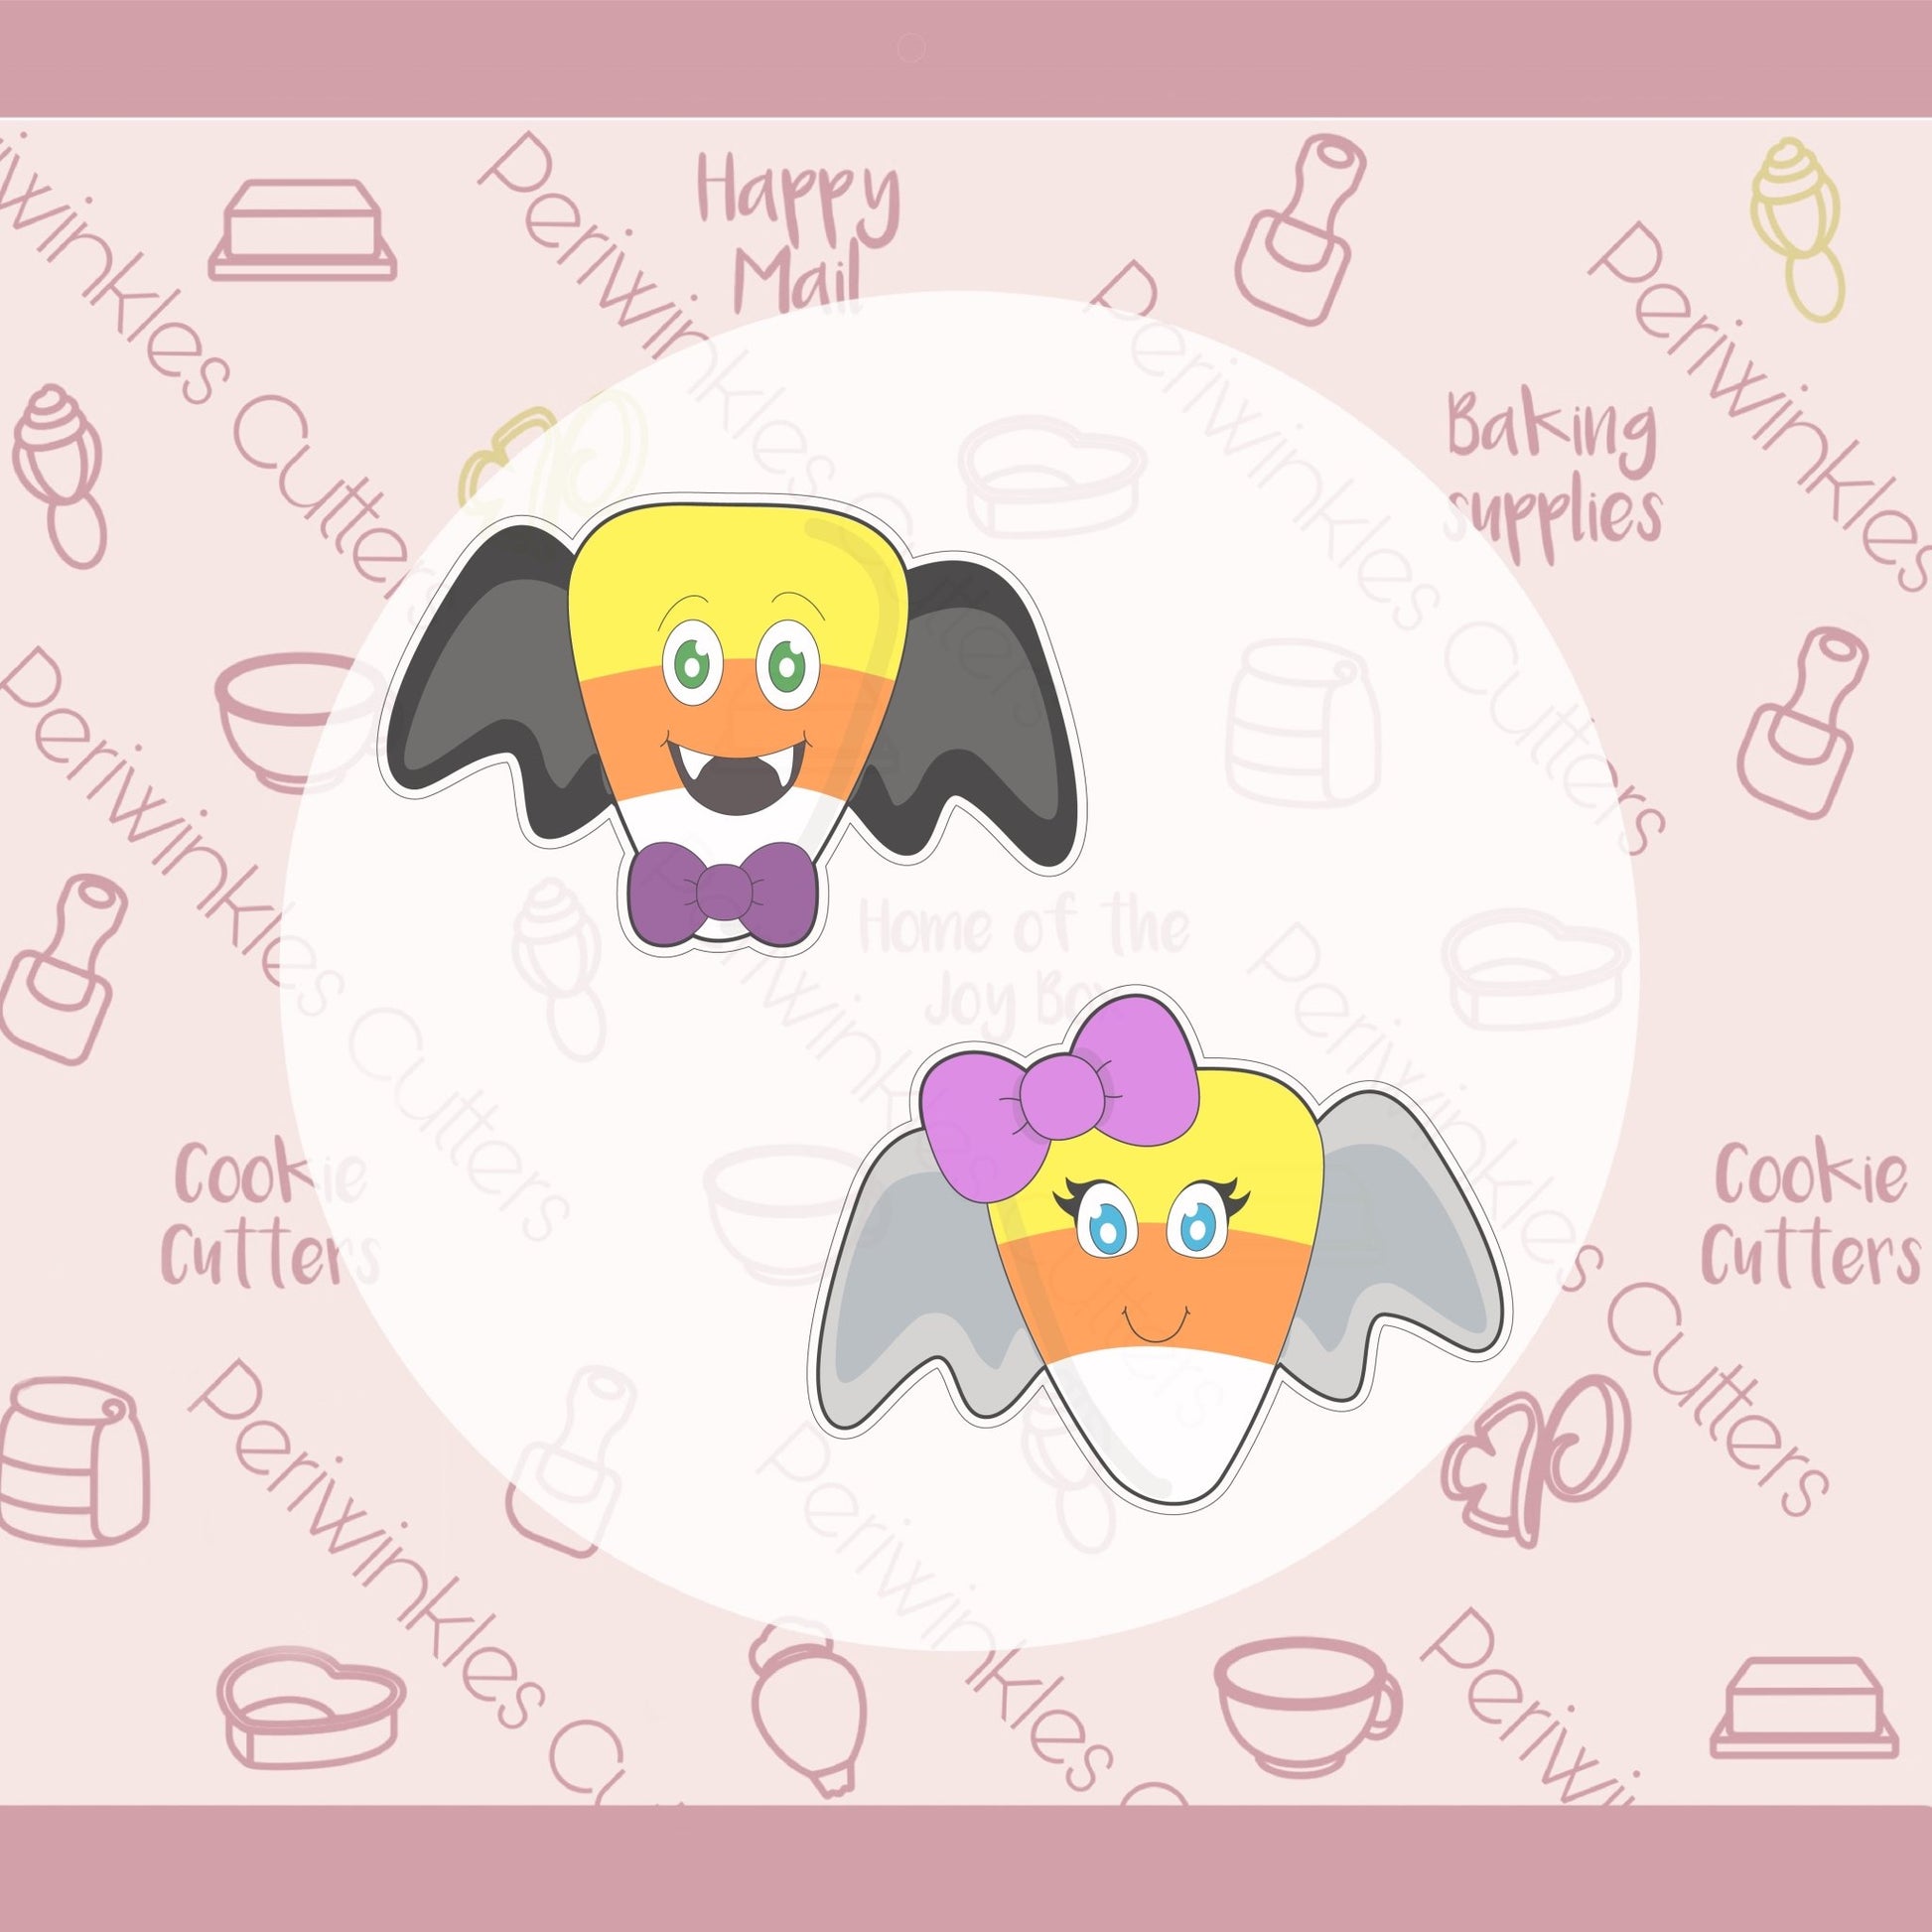 Candy Corn Bat Cookie Cutter